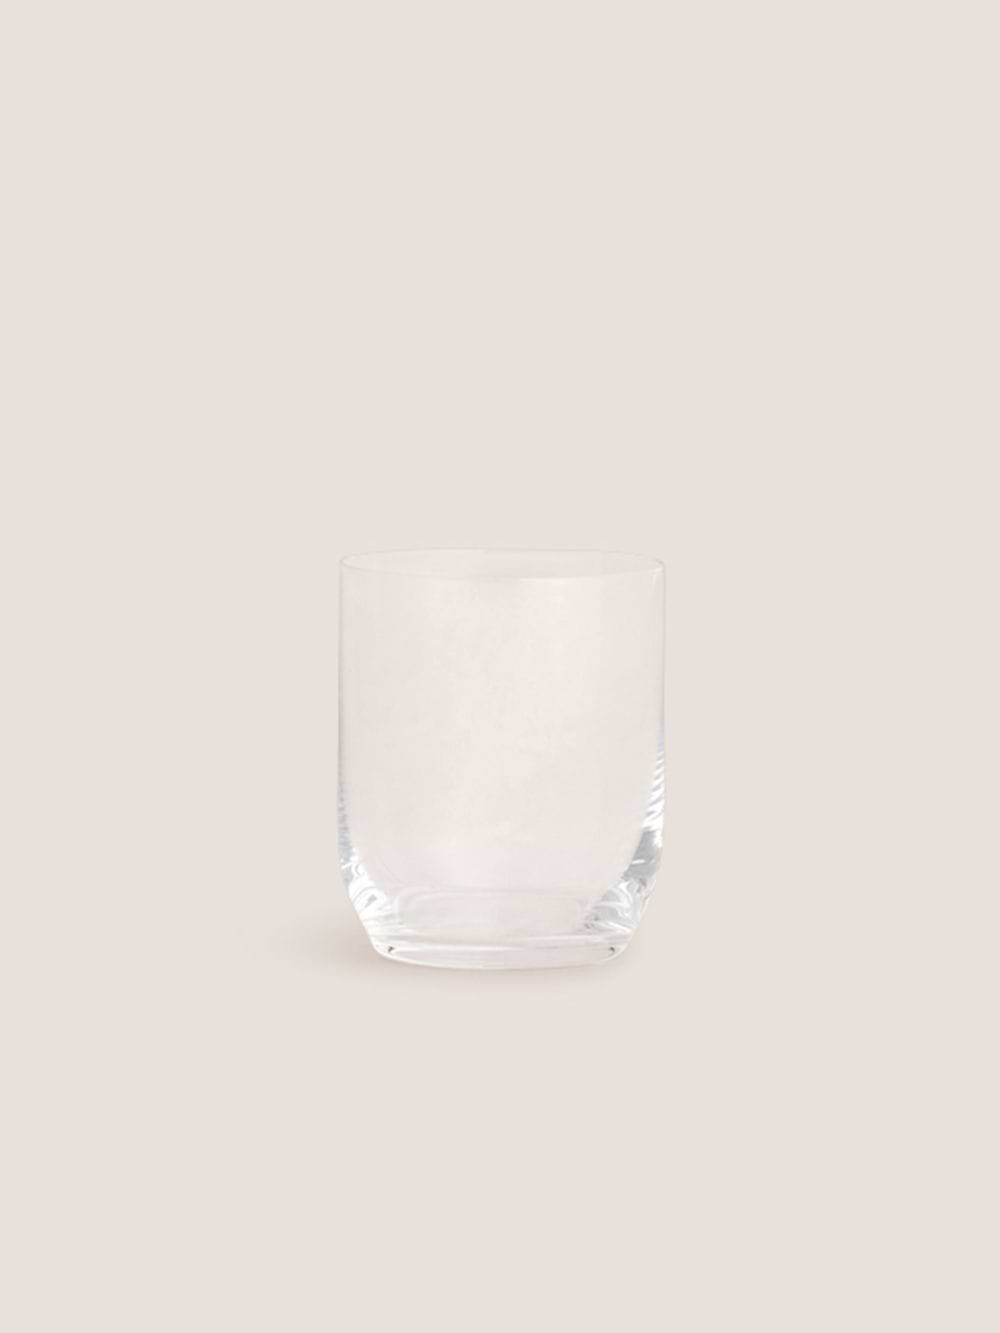 כוס זכוכית ARA בנפח 350 מ”ל